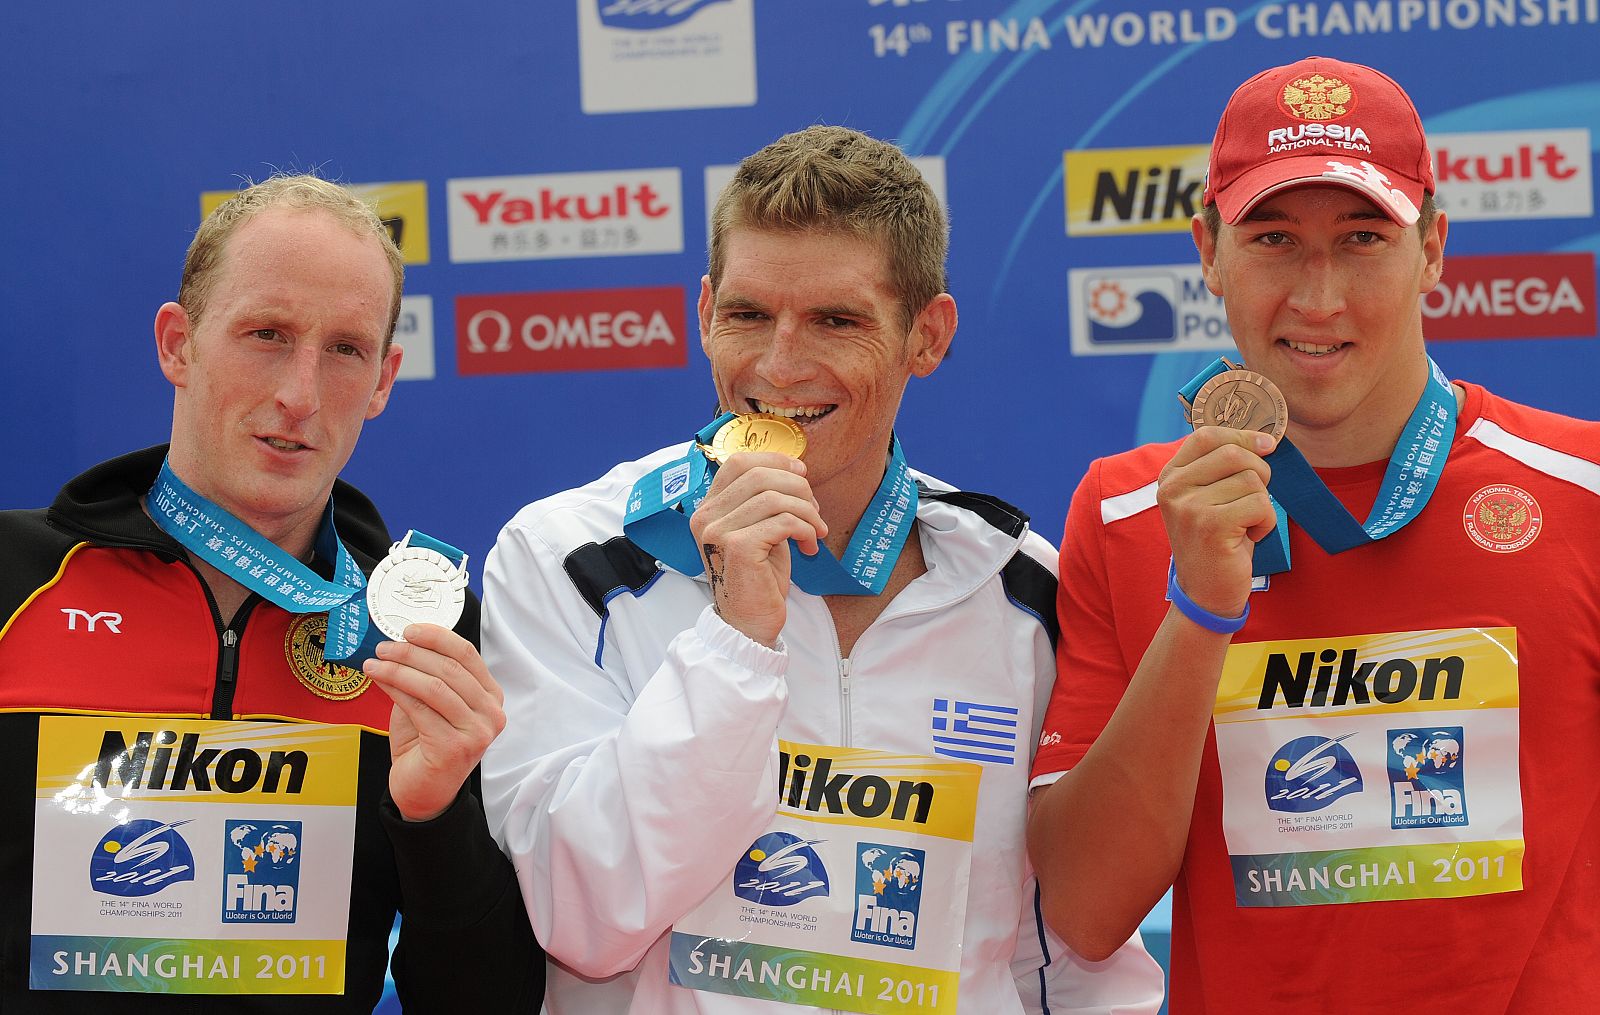 El griego Gianniotis, el alemán Thomas Lurz y el ruso Sergey Bolshakov celebran sus respectivas victorias